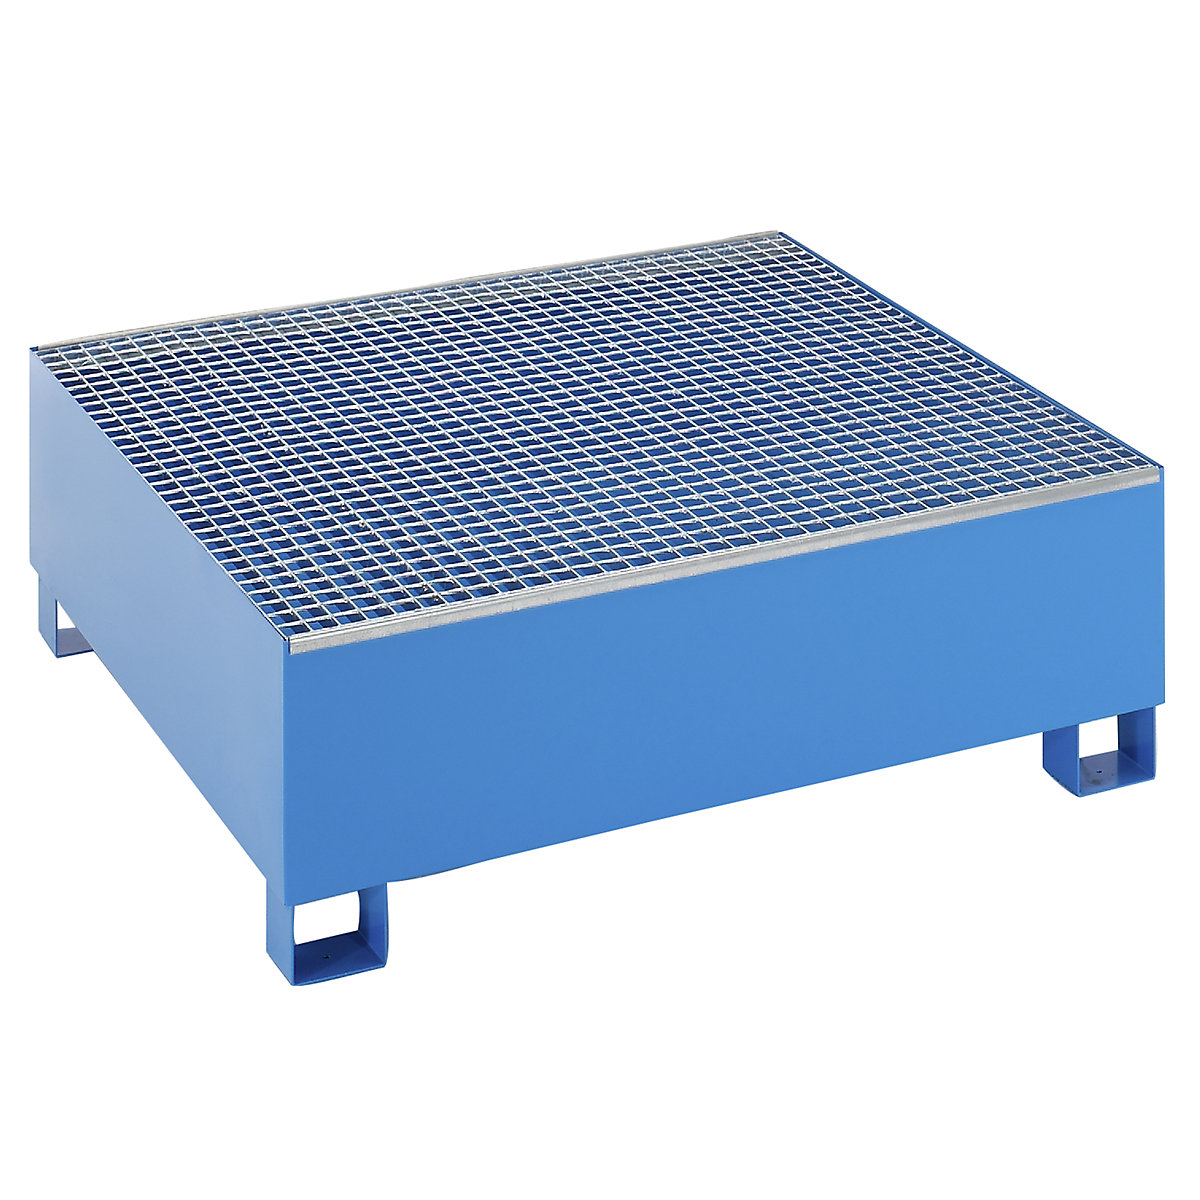 EUROKRAFTbasic Stahl-Auffangwanne für 200-l-Fässer, LxBxH 1200 x 1200 x 415 mm, mit Zulassung, blau pulverbeschichtet, mit Gitterrost